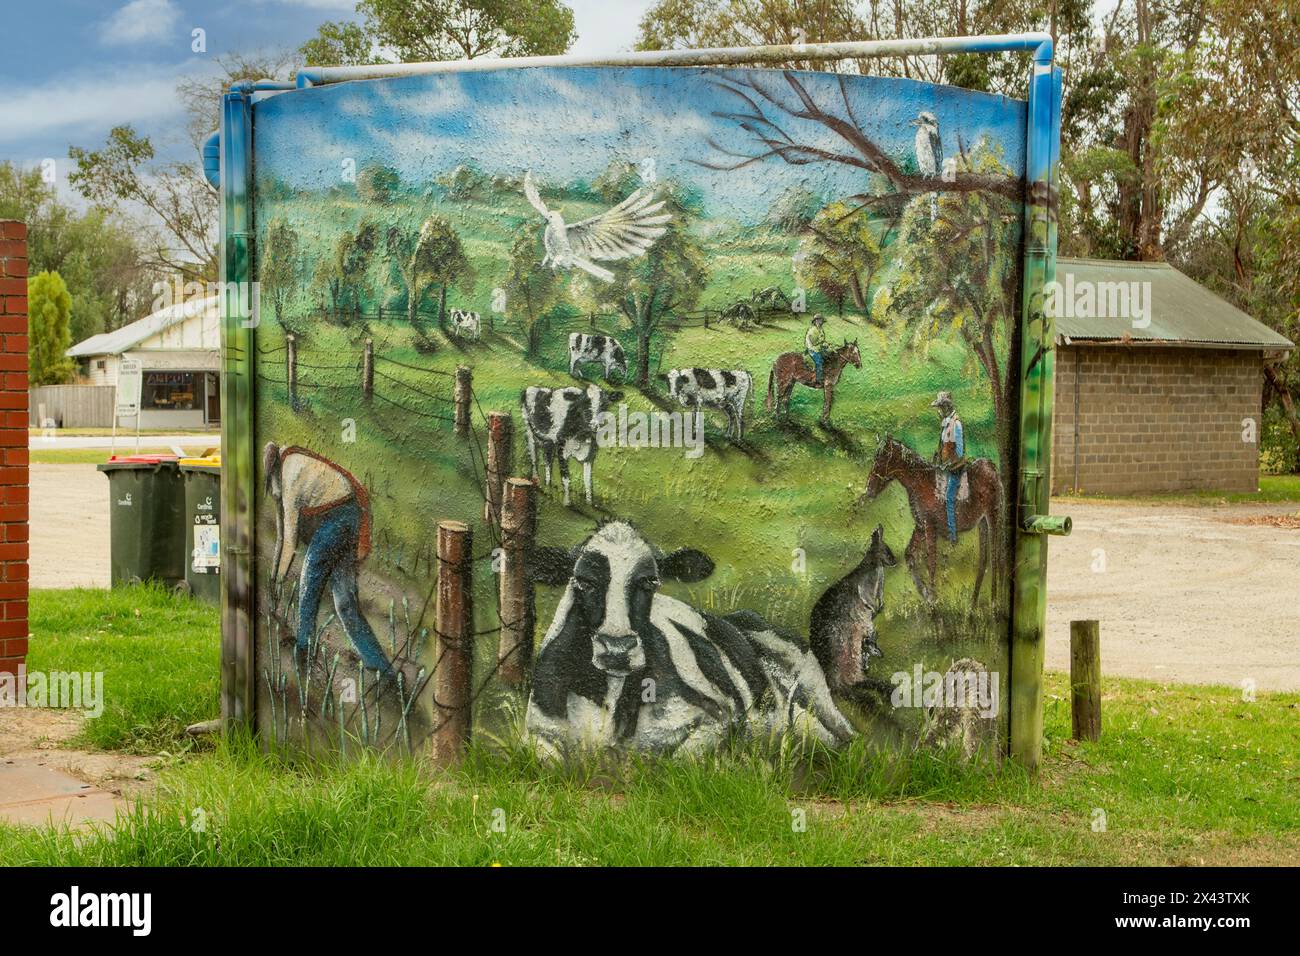 Art de réservoir d'eau de ferme laitière par Simon White, Bayles, Victoria, Australie Banque D'Images